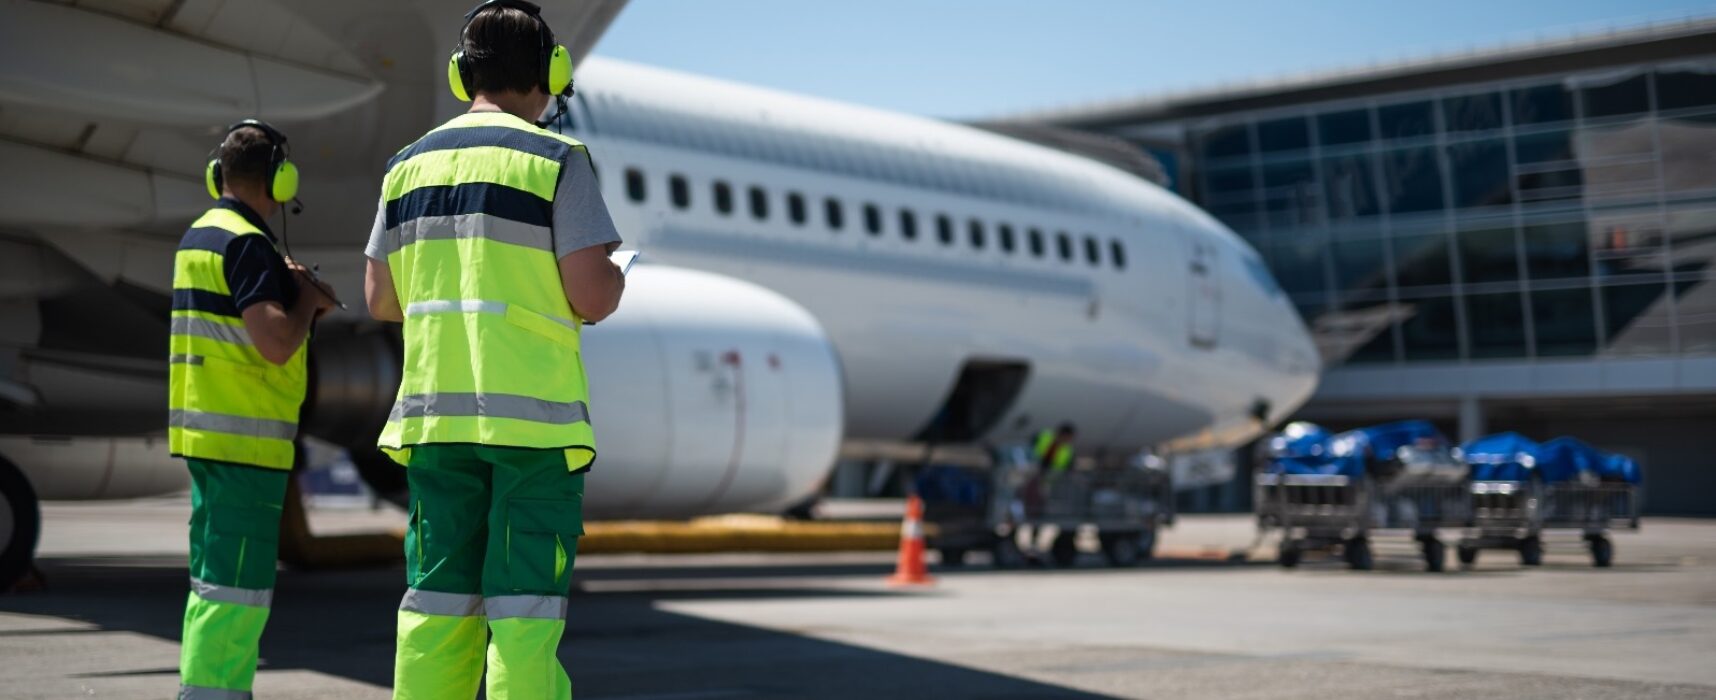 Aeroporti di Puglia cerca 80 addetti di scalo a Bari e Brindisi / COME CANDIDARSI